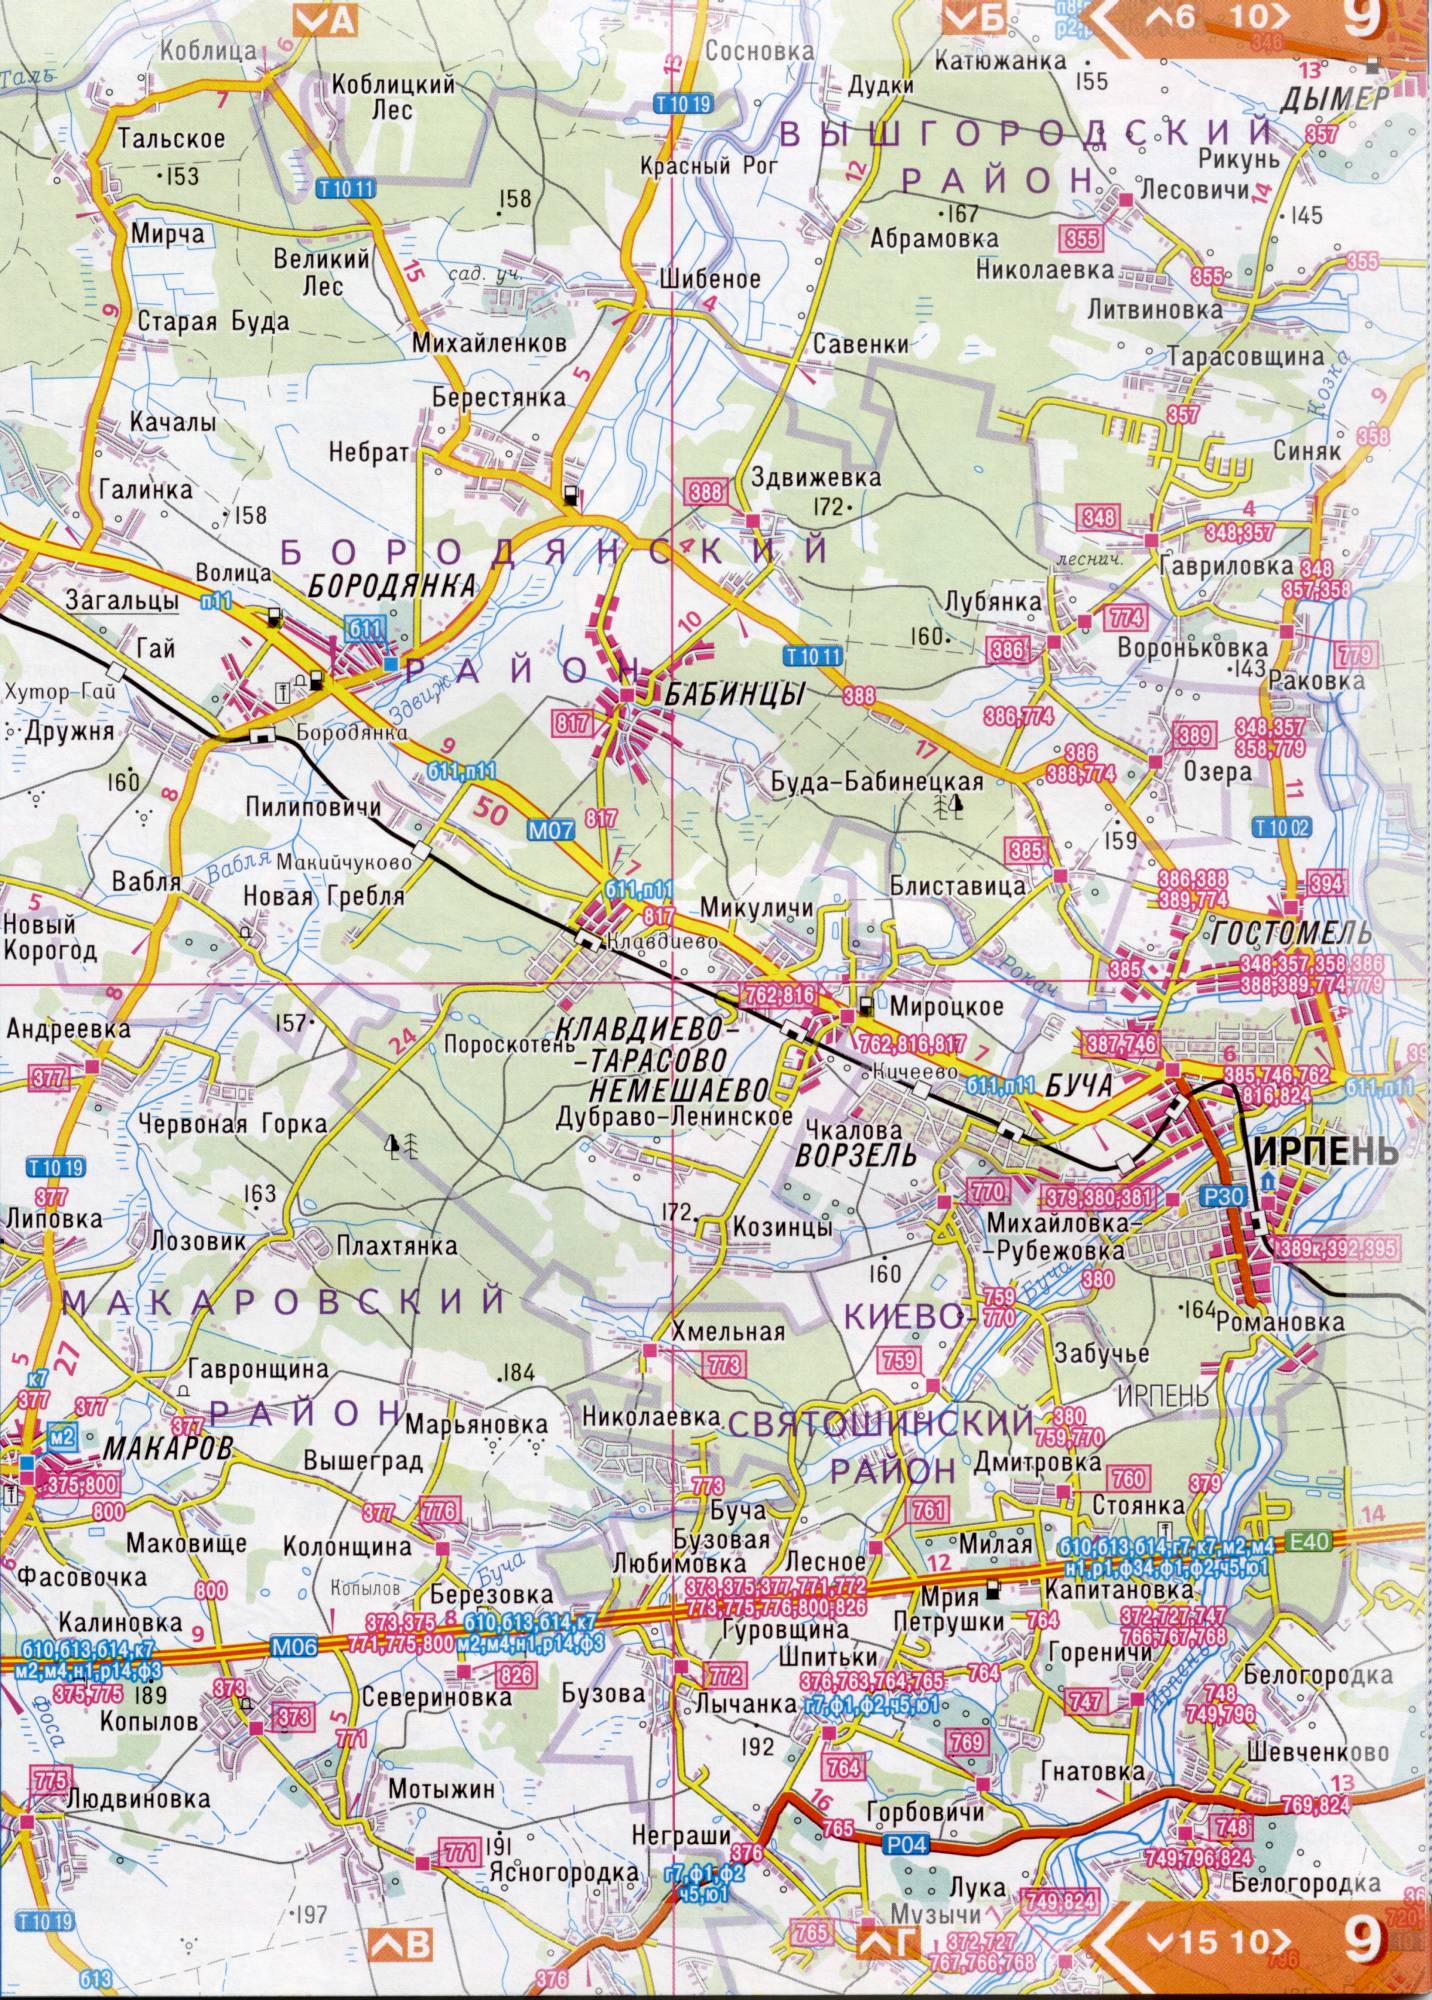 Atlas von der Region Kiew. Eine detaillierte Karte der Region Kiew von dem Atlas von Autobahnen. Kiewer Gebiet auf einer detaillierten Karte Maßstab 1cm = 3km. Frei, B2 - Irpen